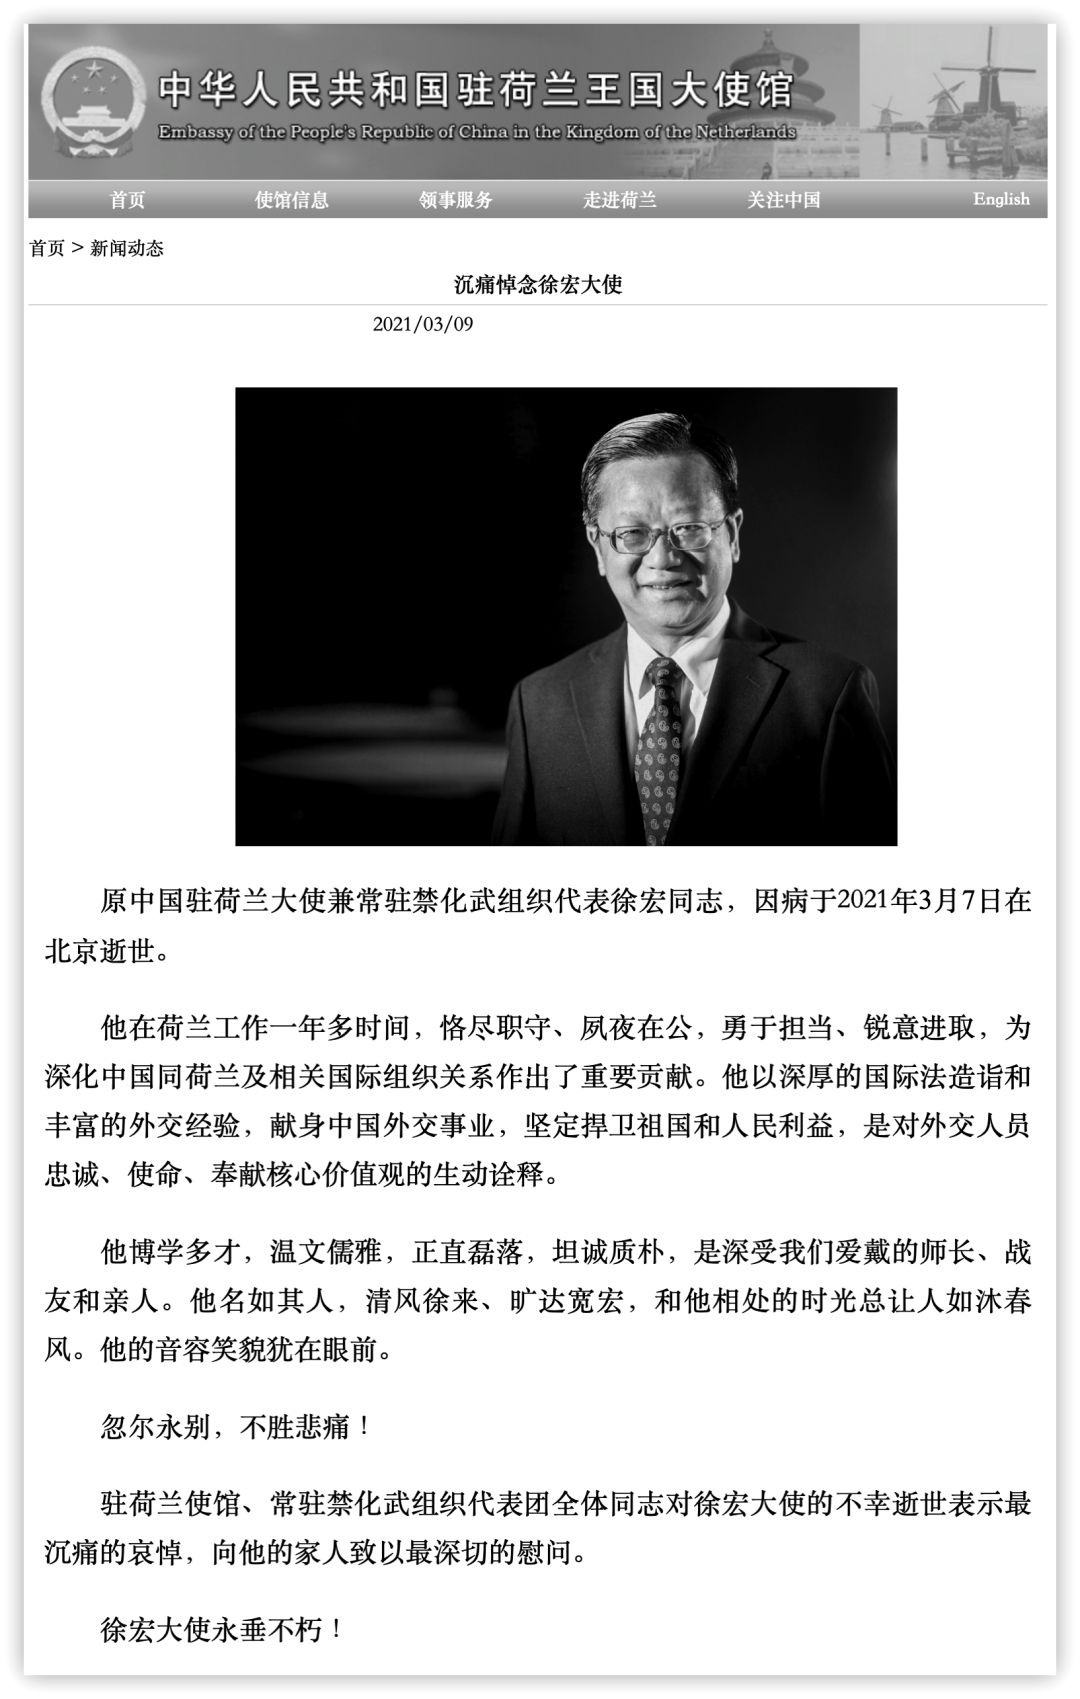 中国前驻荷兰大使徐宏逝世 半年前卸任回京 京报网